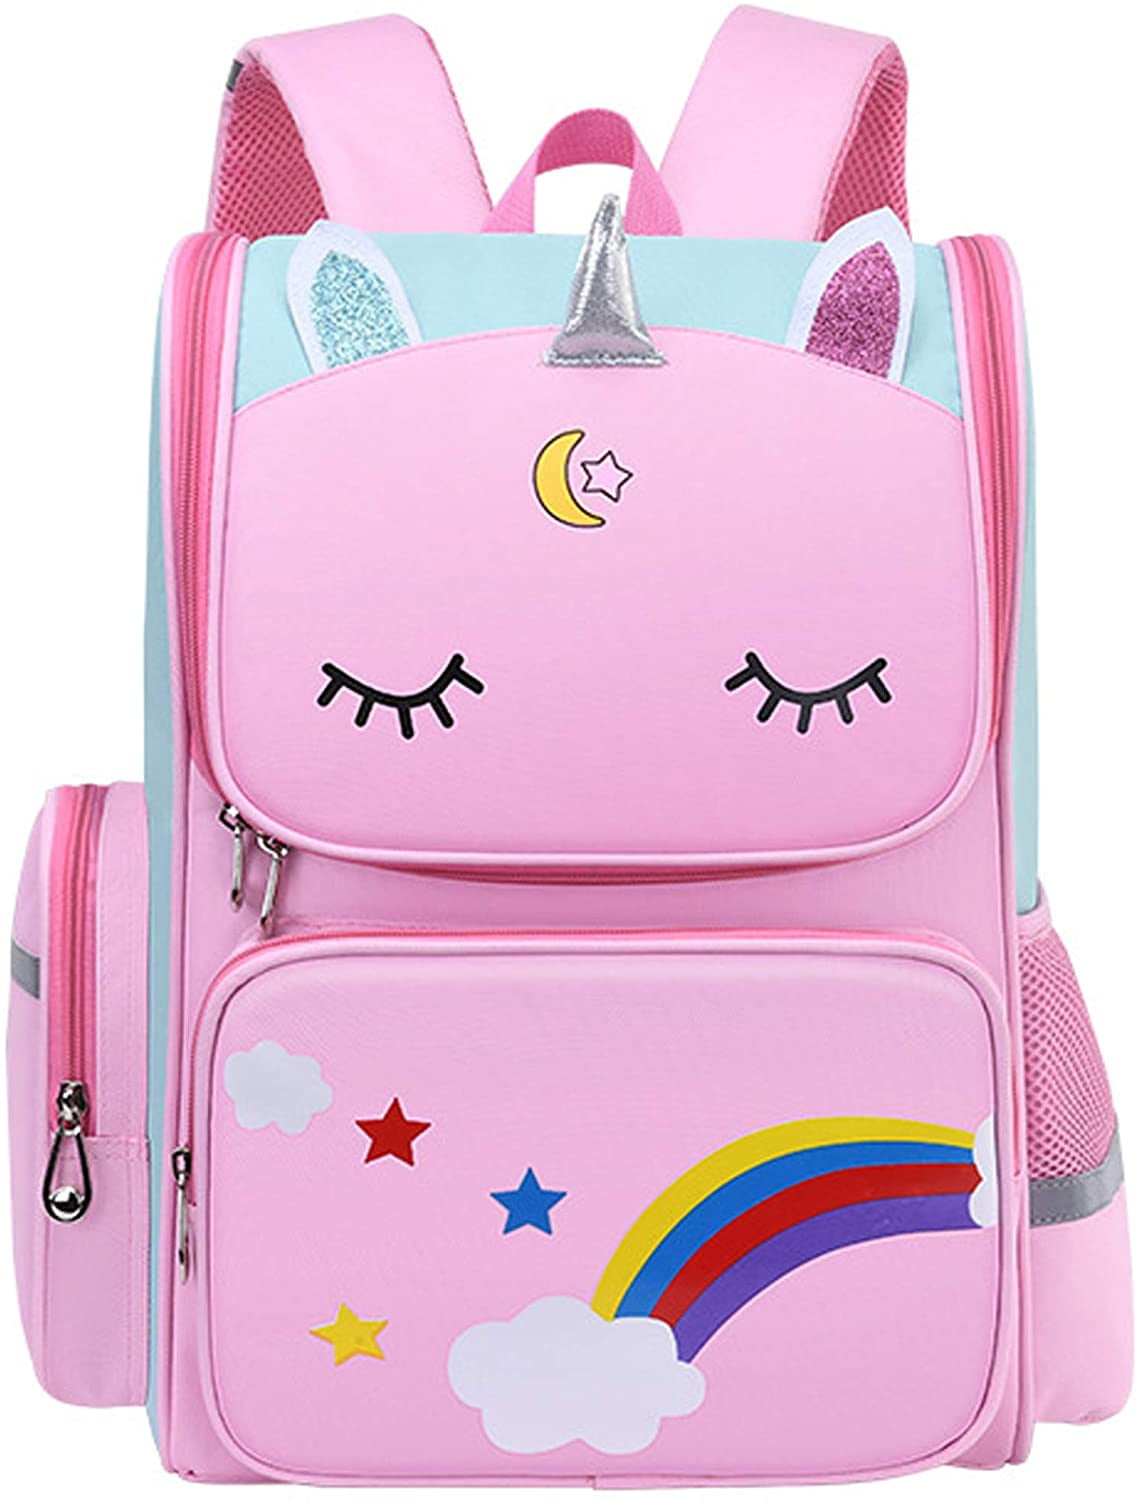 Kids Backpack School bag BookBag for Boys Girls